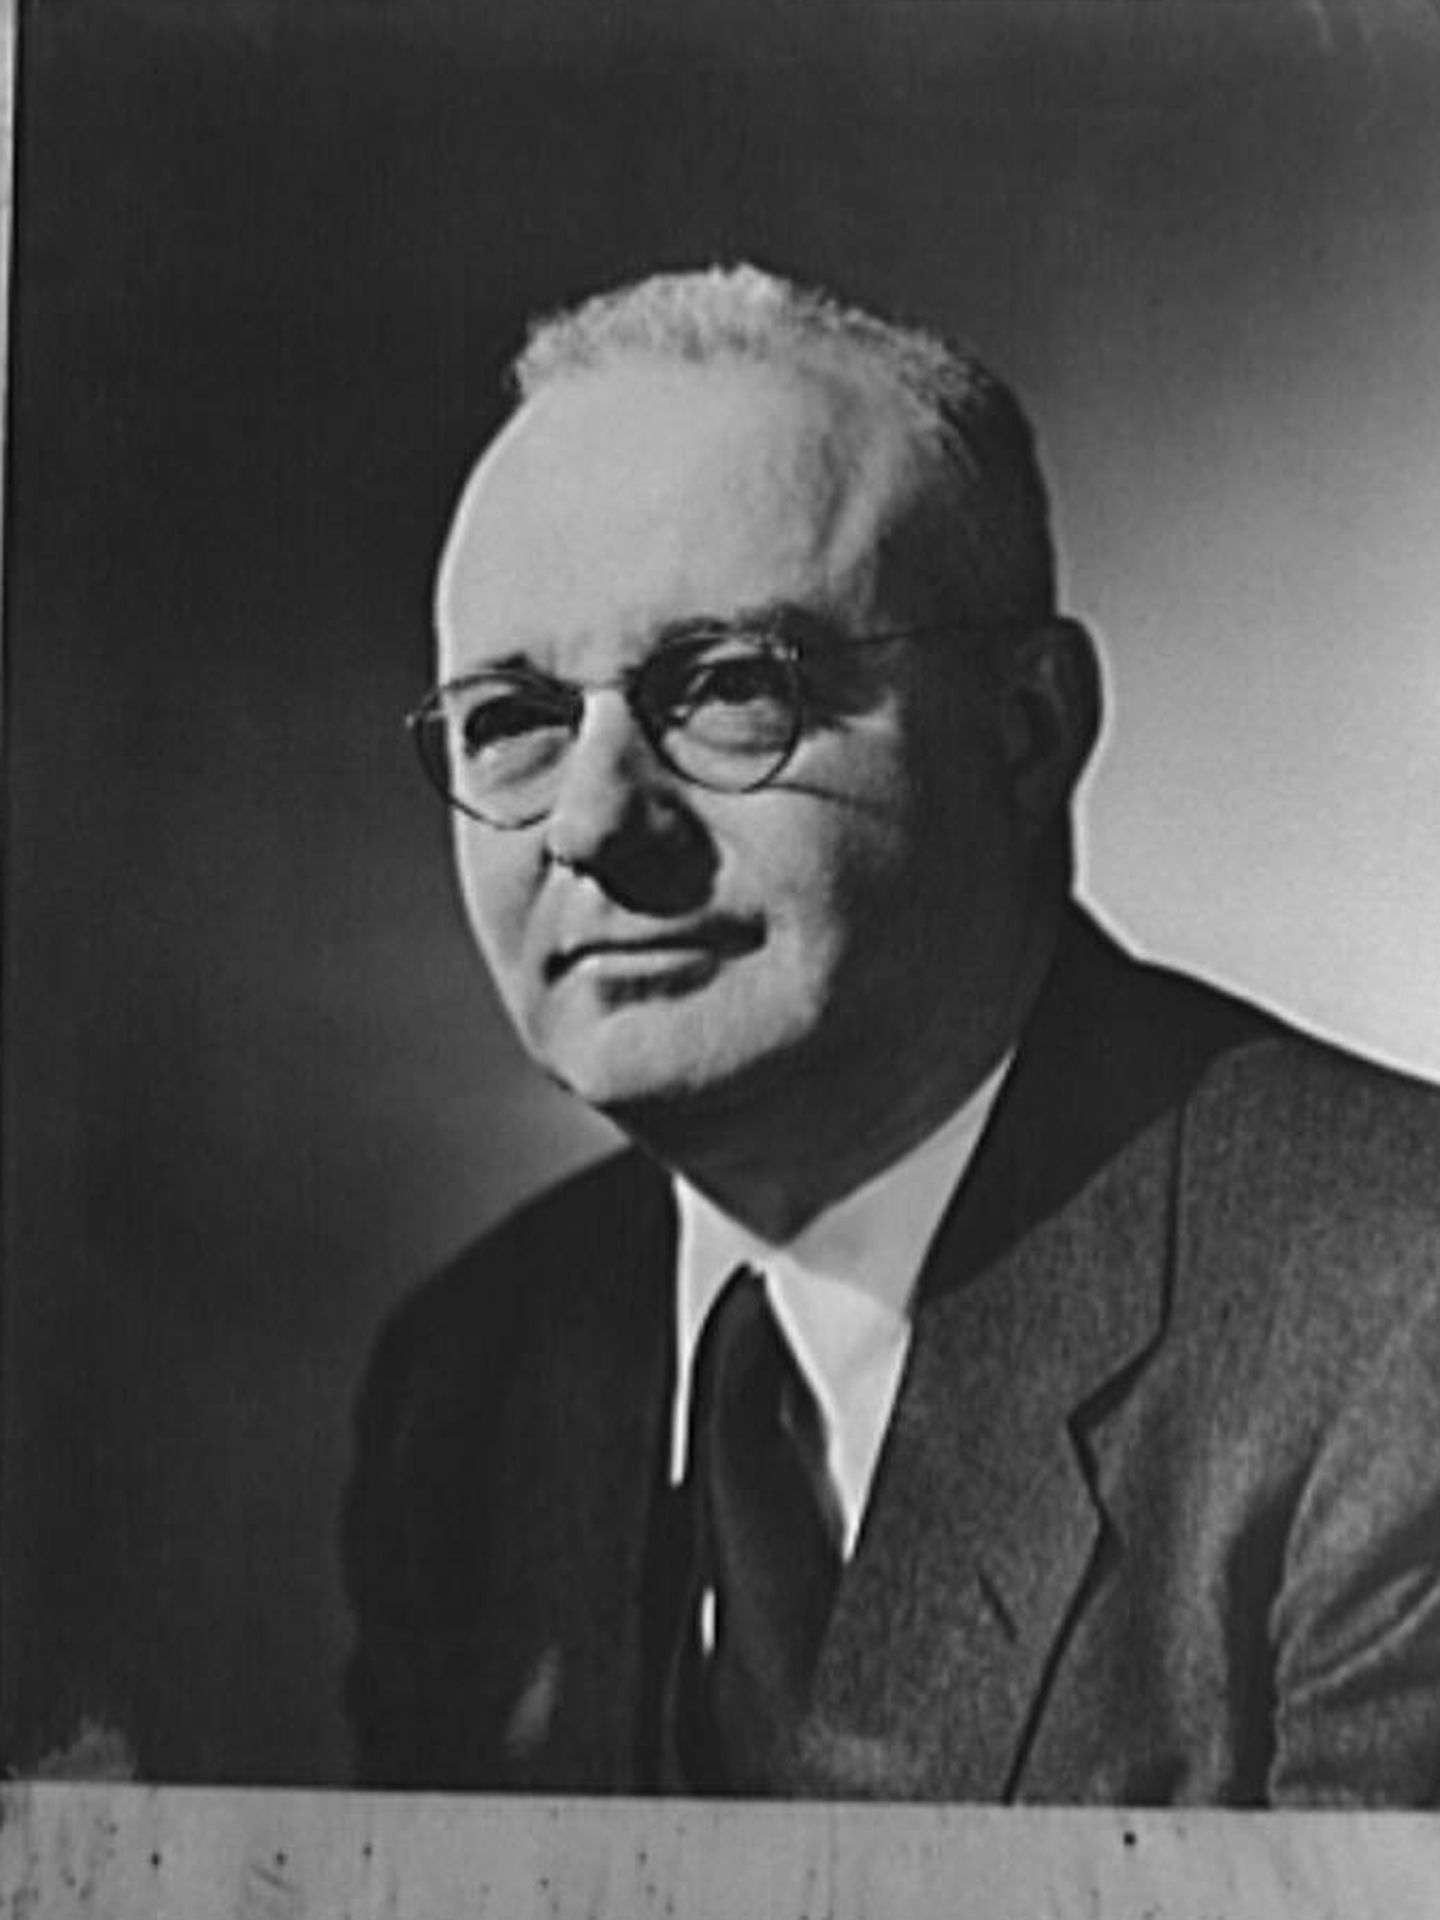 Thomas Midgley Jr., el creador de la gasolina con plomo. (Picryl)